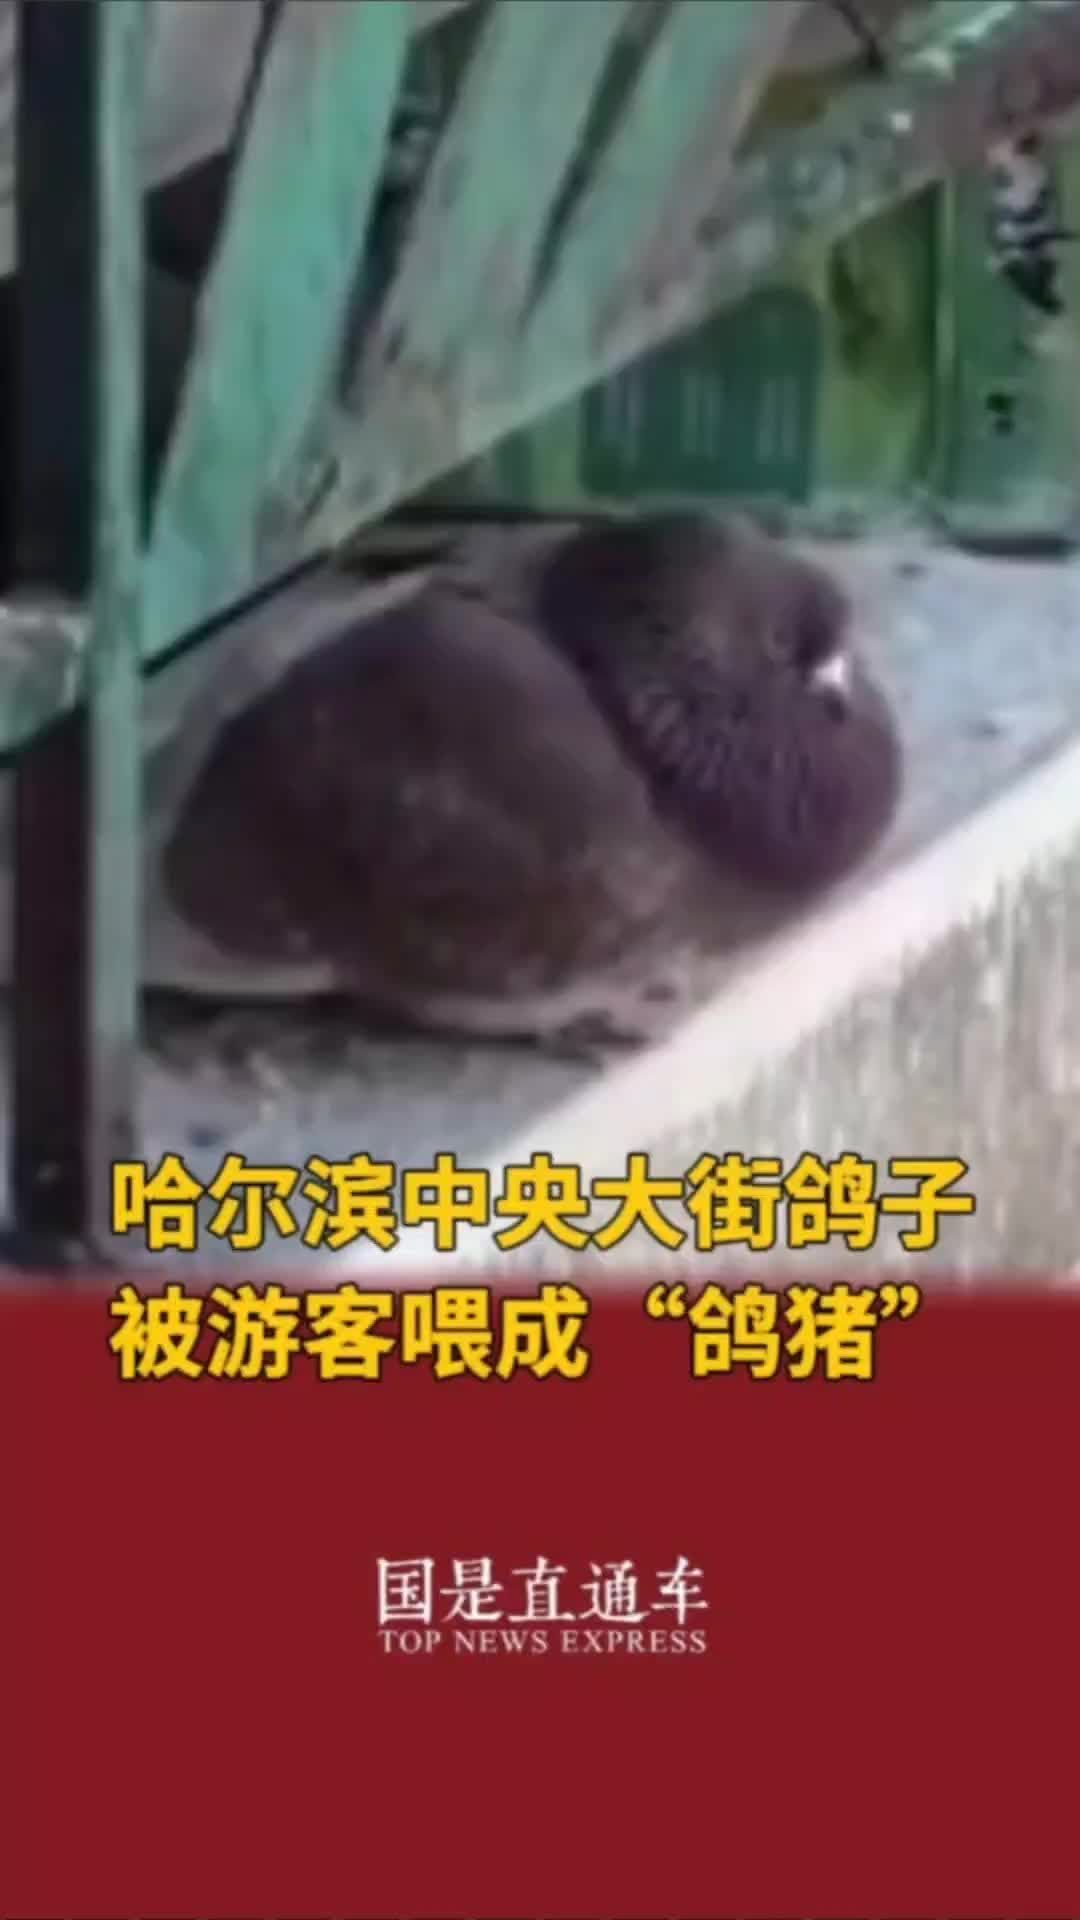 哈尔滨中央大街鸽子被游客喂成“鸽猪”#国是论坛